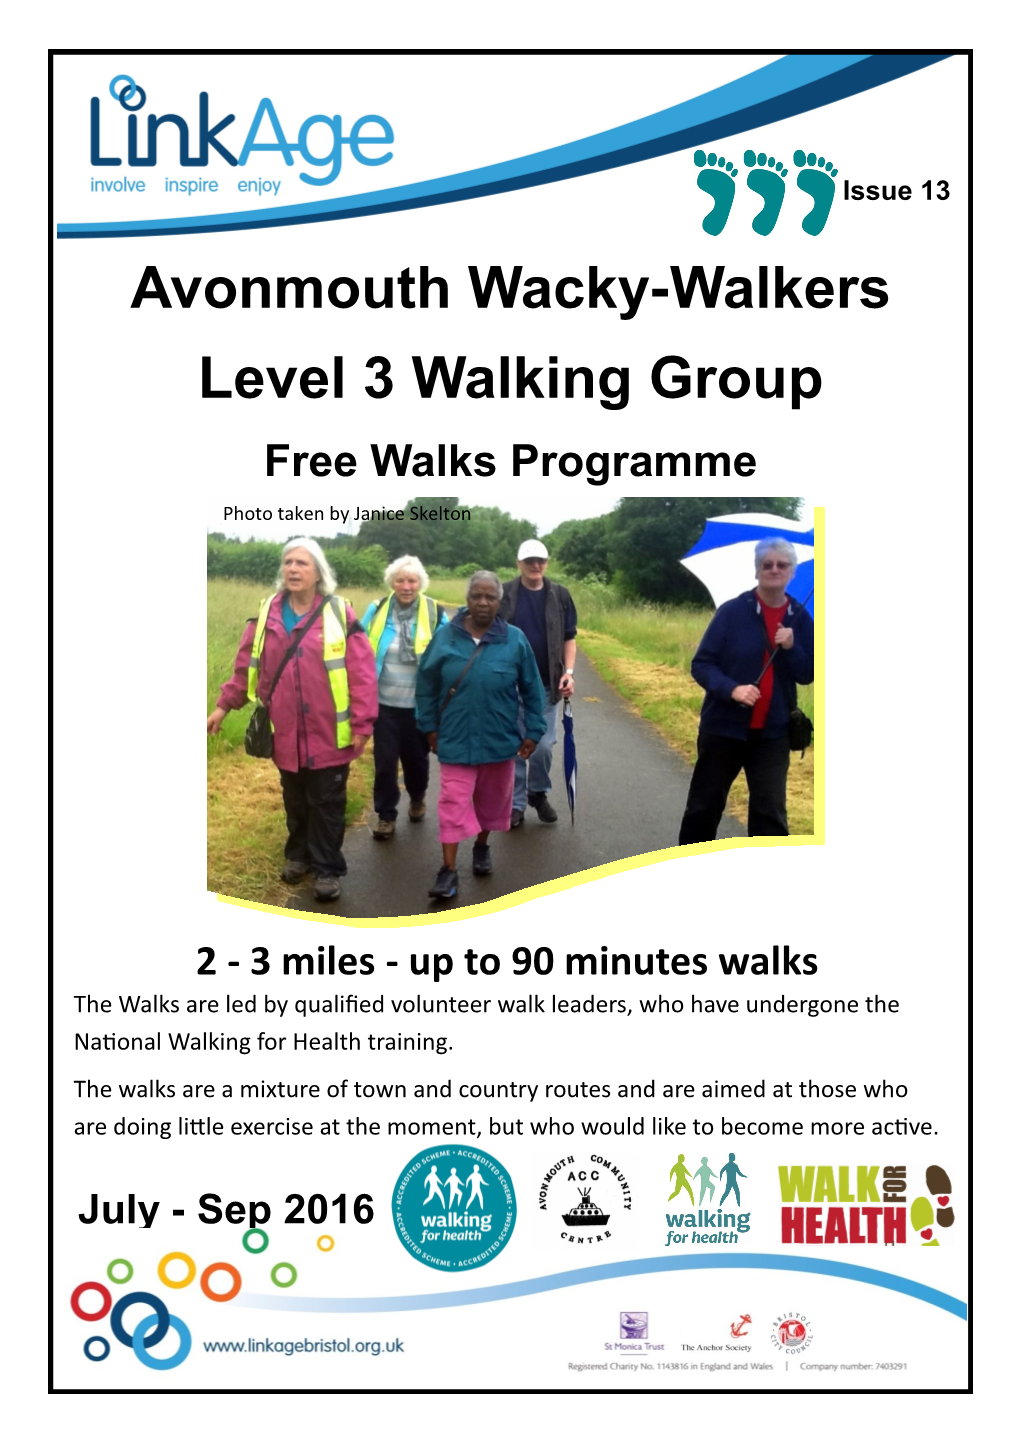 Avonmouth Wacky-Walkers Level 3 Walking Group Free Walks Programme Photo Taken by Janice Skelton